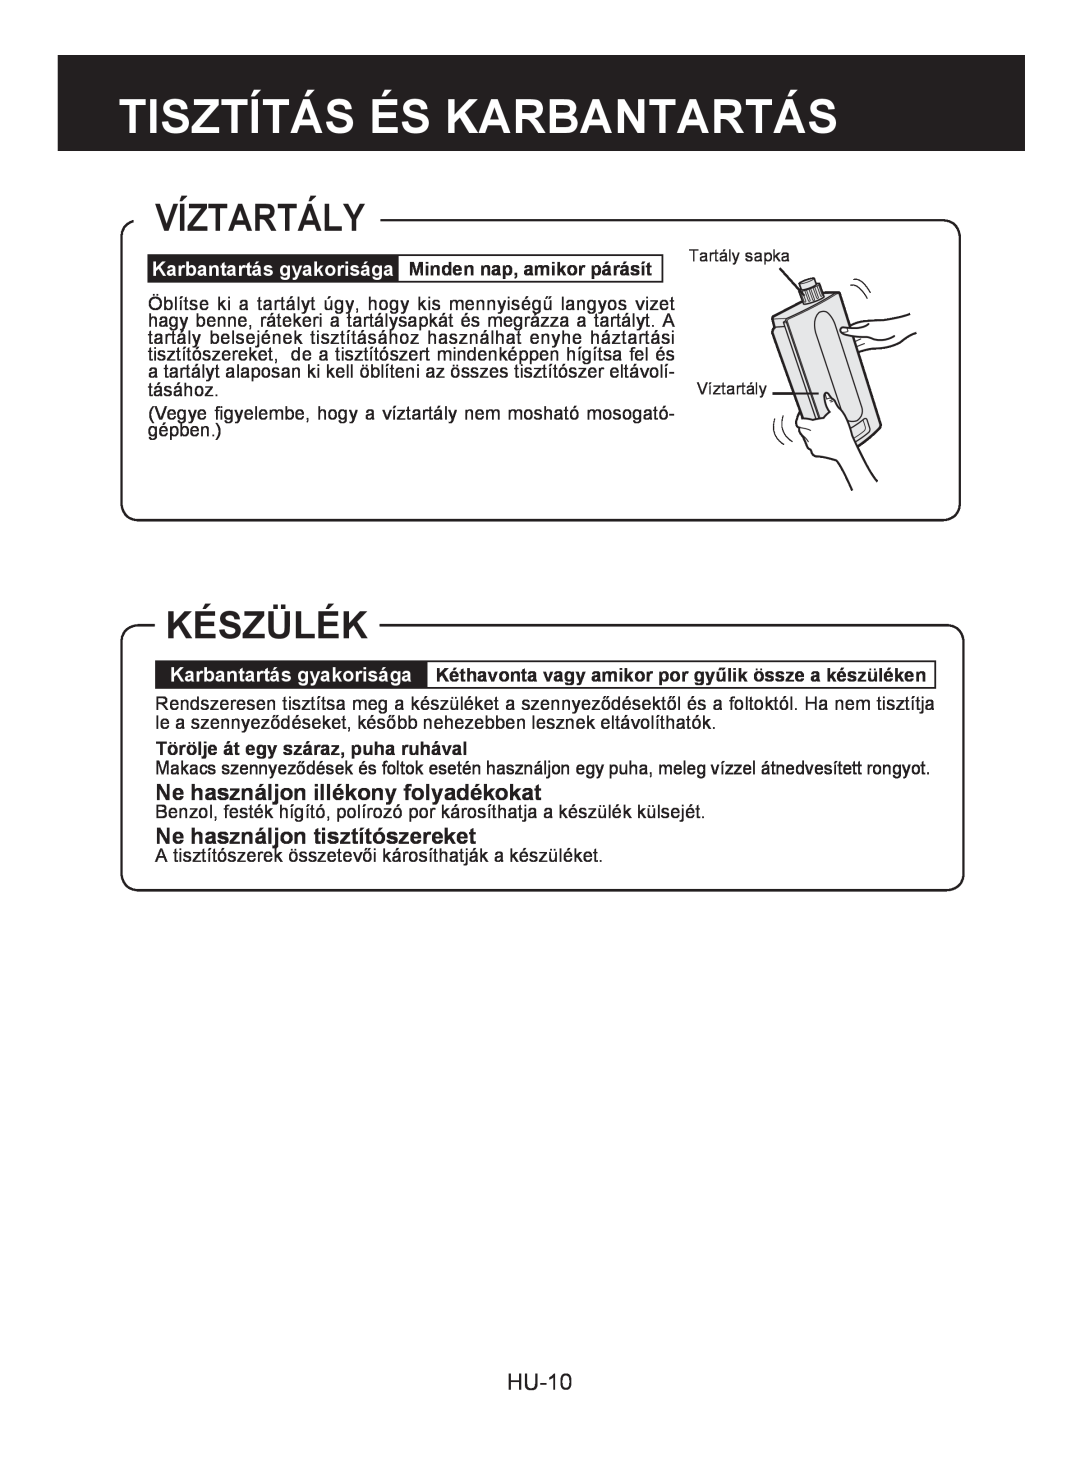 Sharp KC-930E Víztartály, Készülék, Ne használjon illékony folyadékokat, Ne használjon tisztítószereket, HU-10 